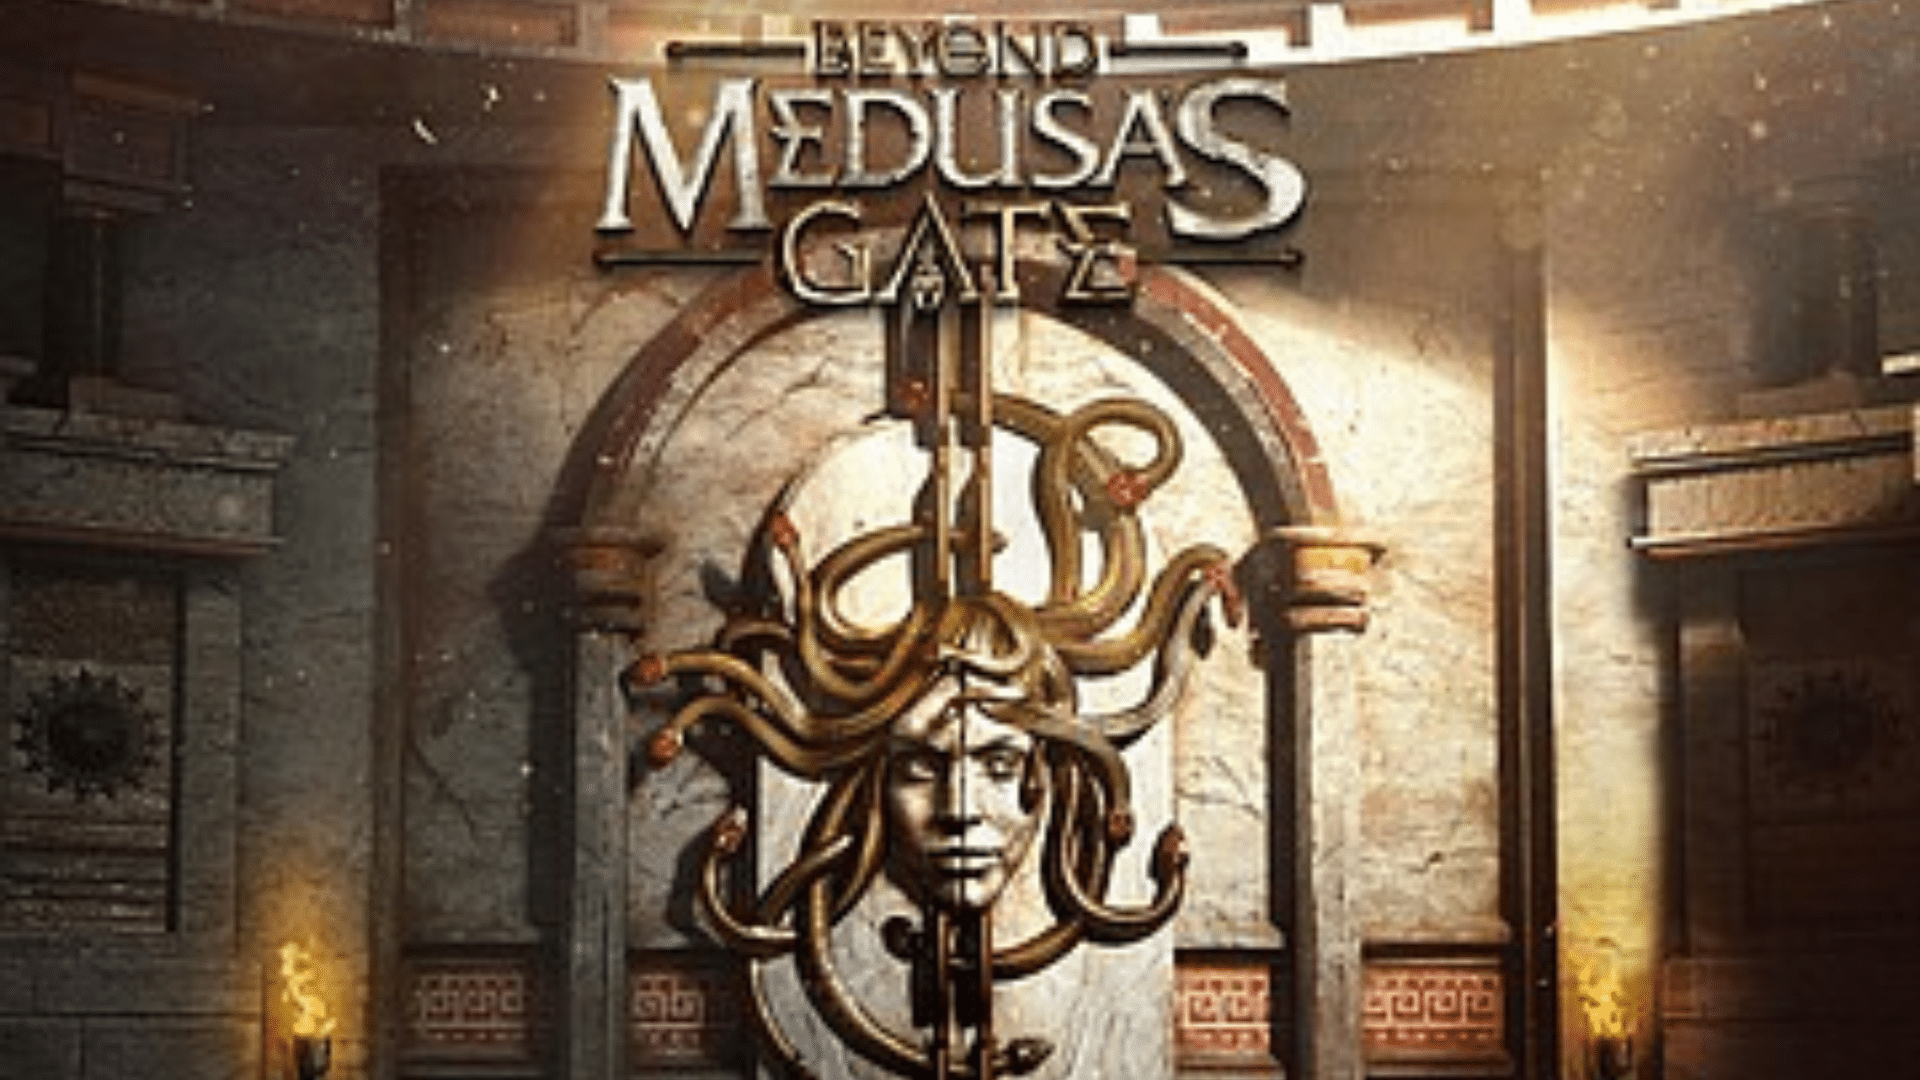 Beyond Medusa's gate VR Escape Room in der Jochen Schweizer Arena